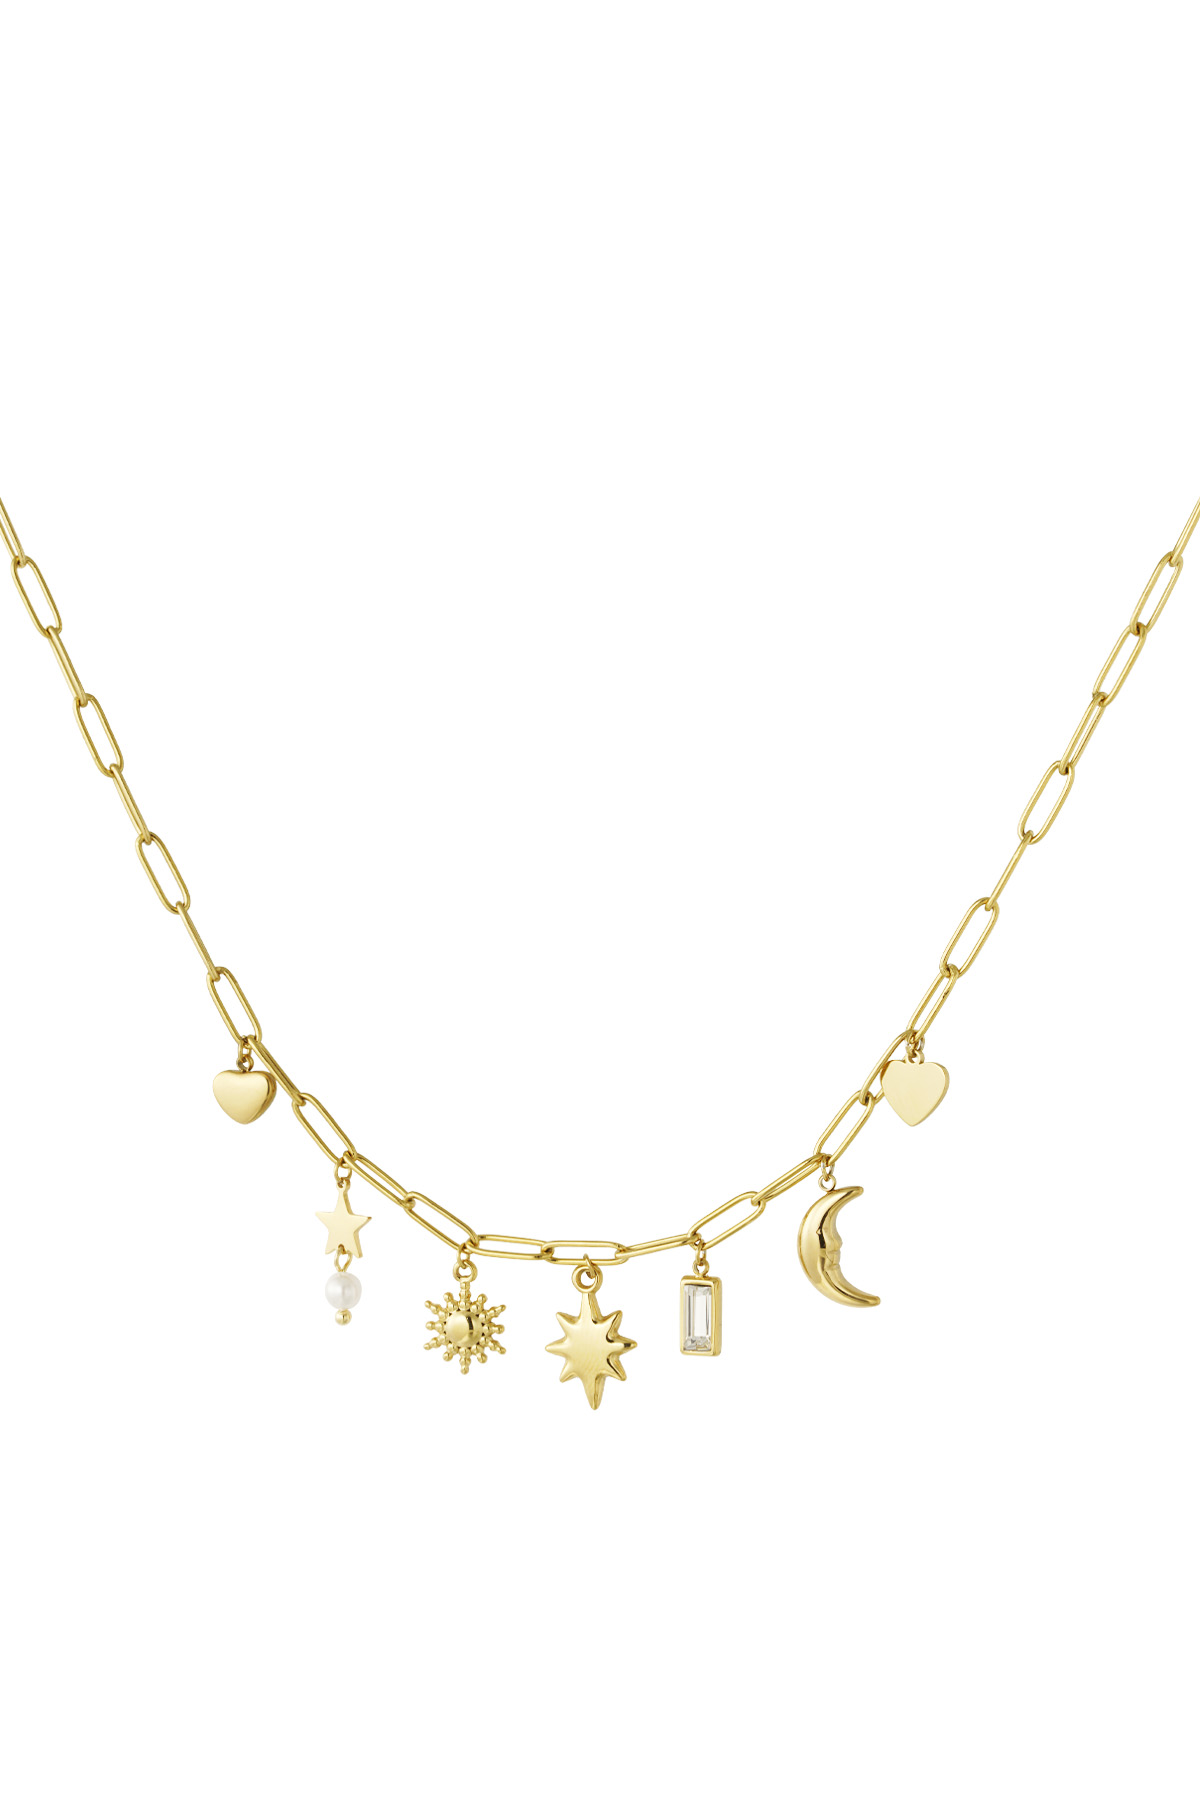 Tag- und Nacht-Charm-Halskette – Gold 